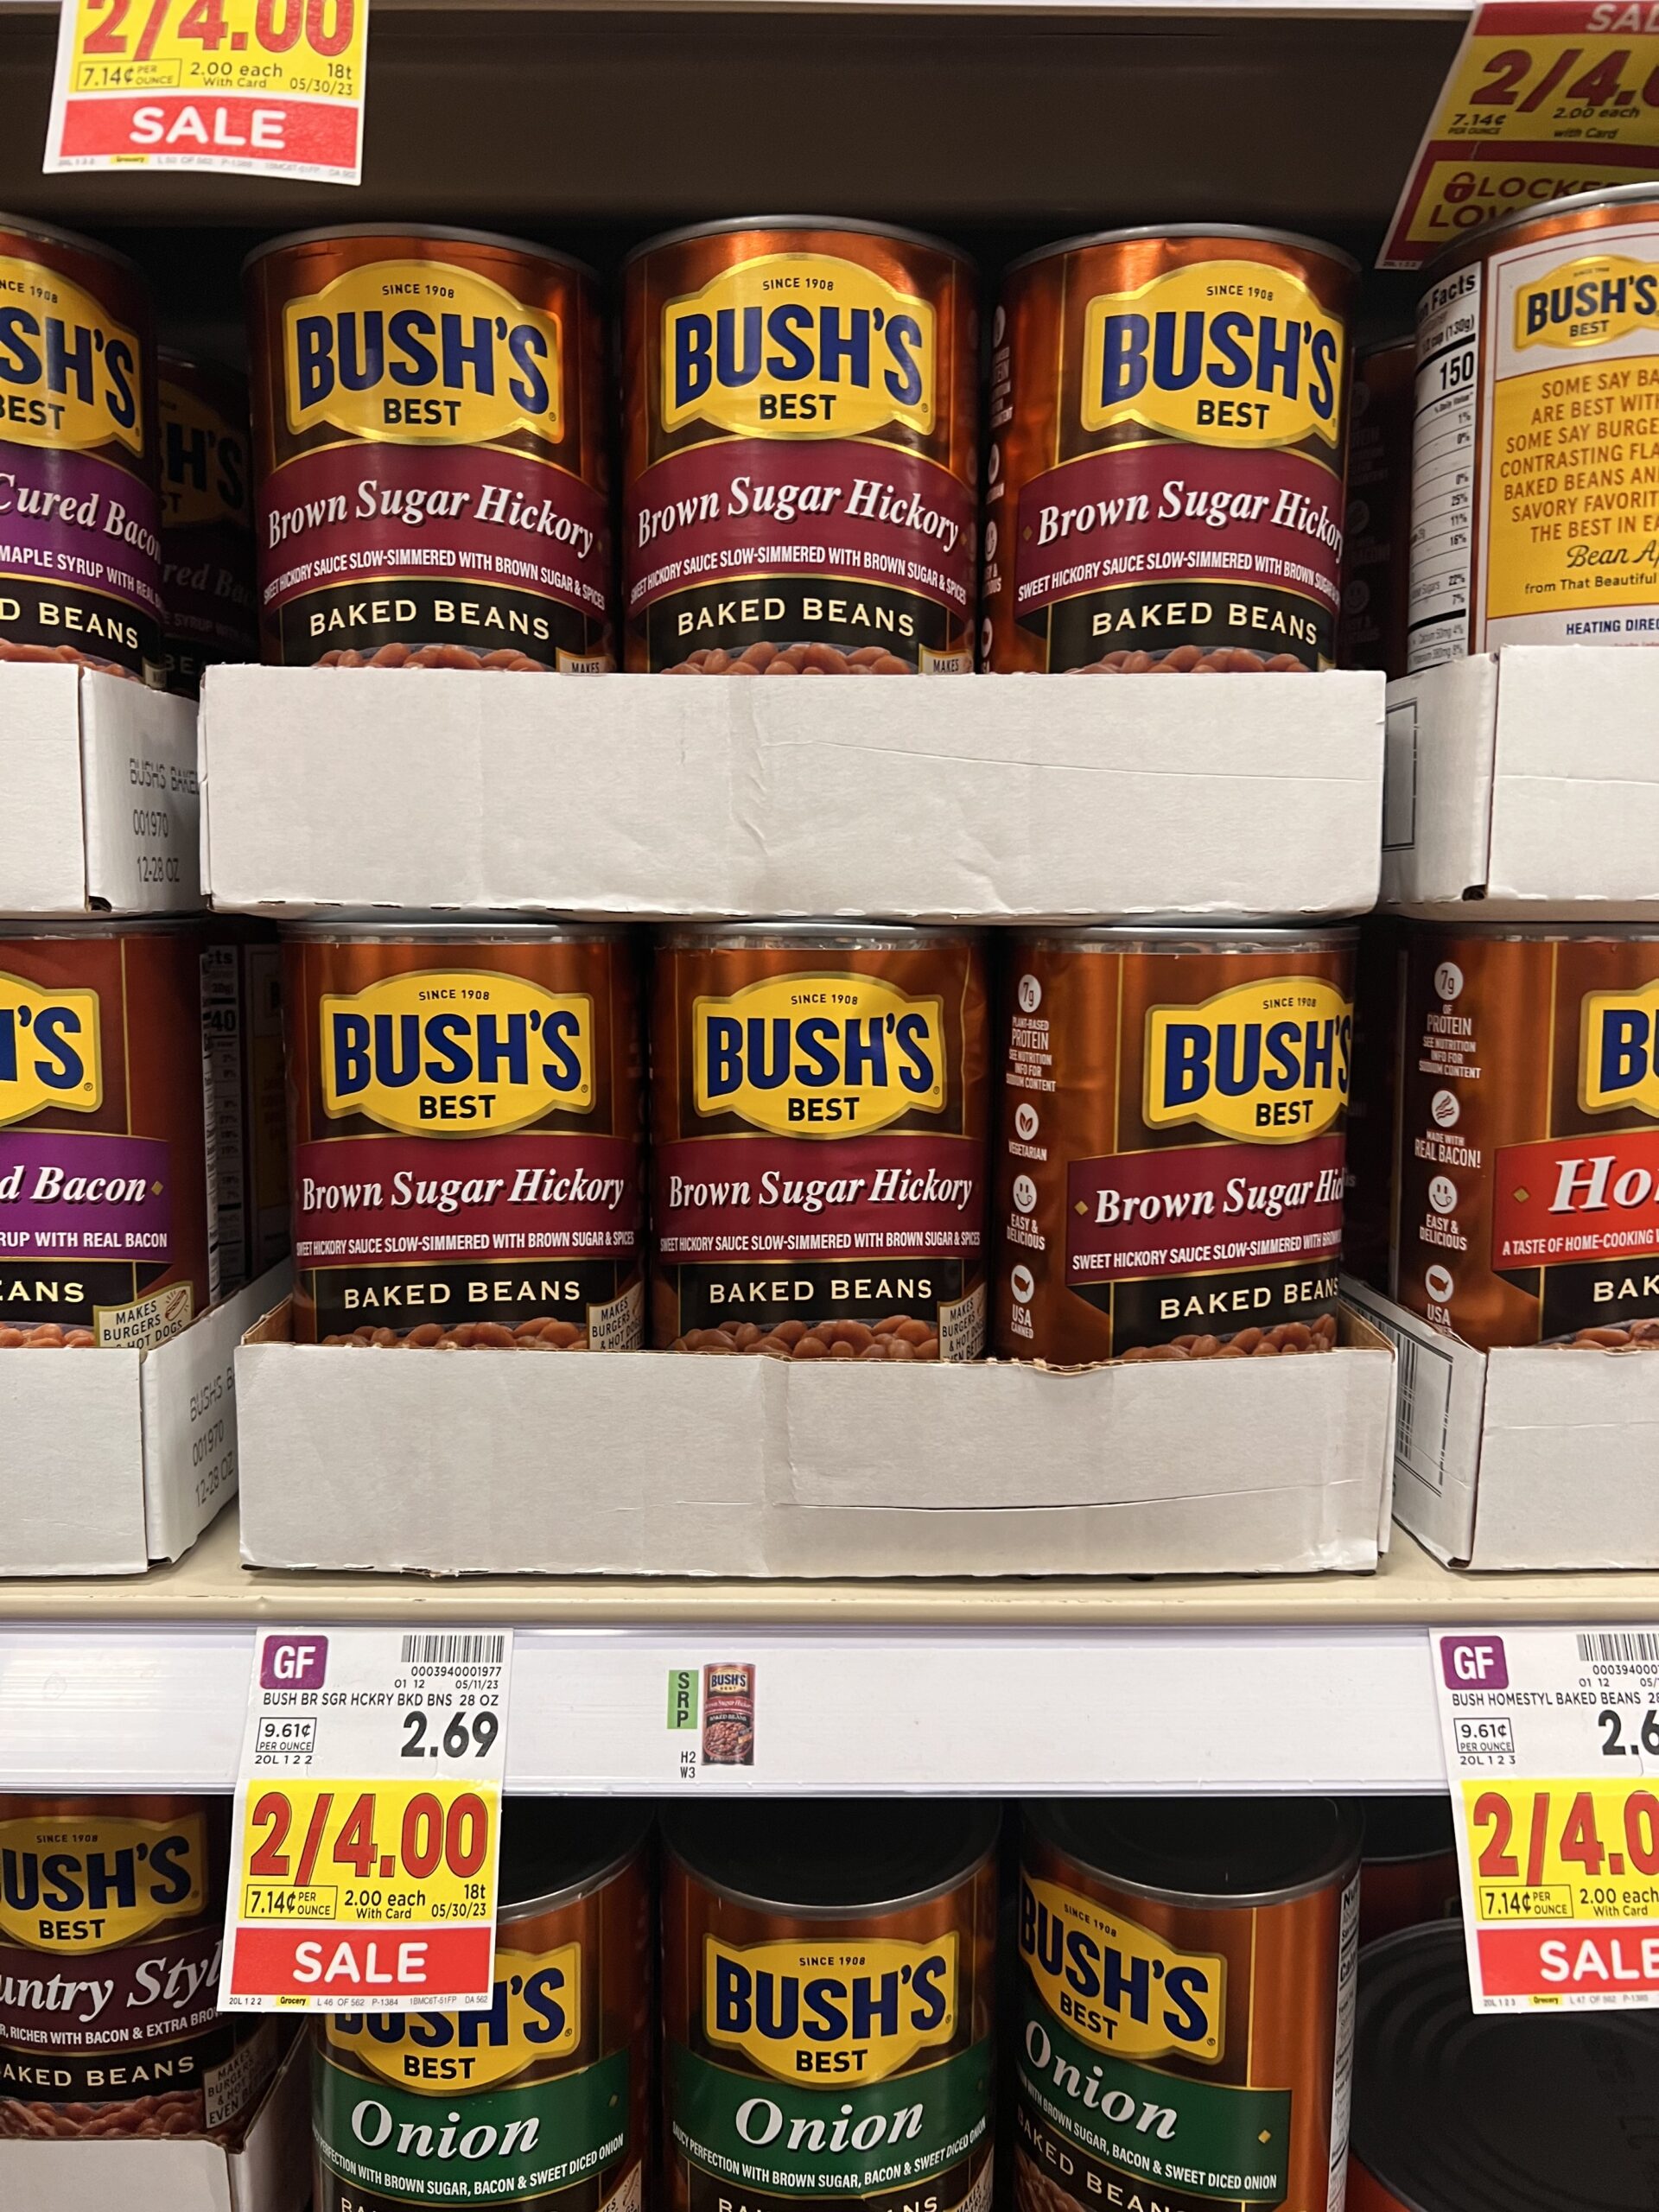 bush's beans kroger shelf image 7